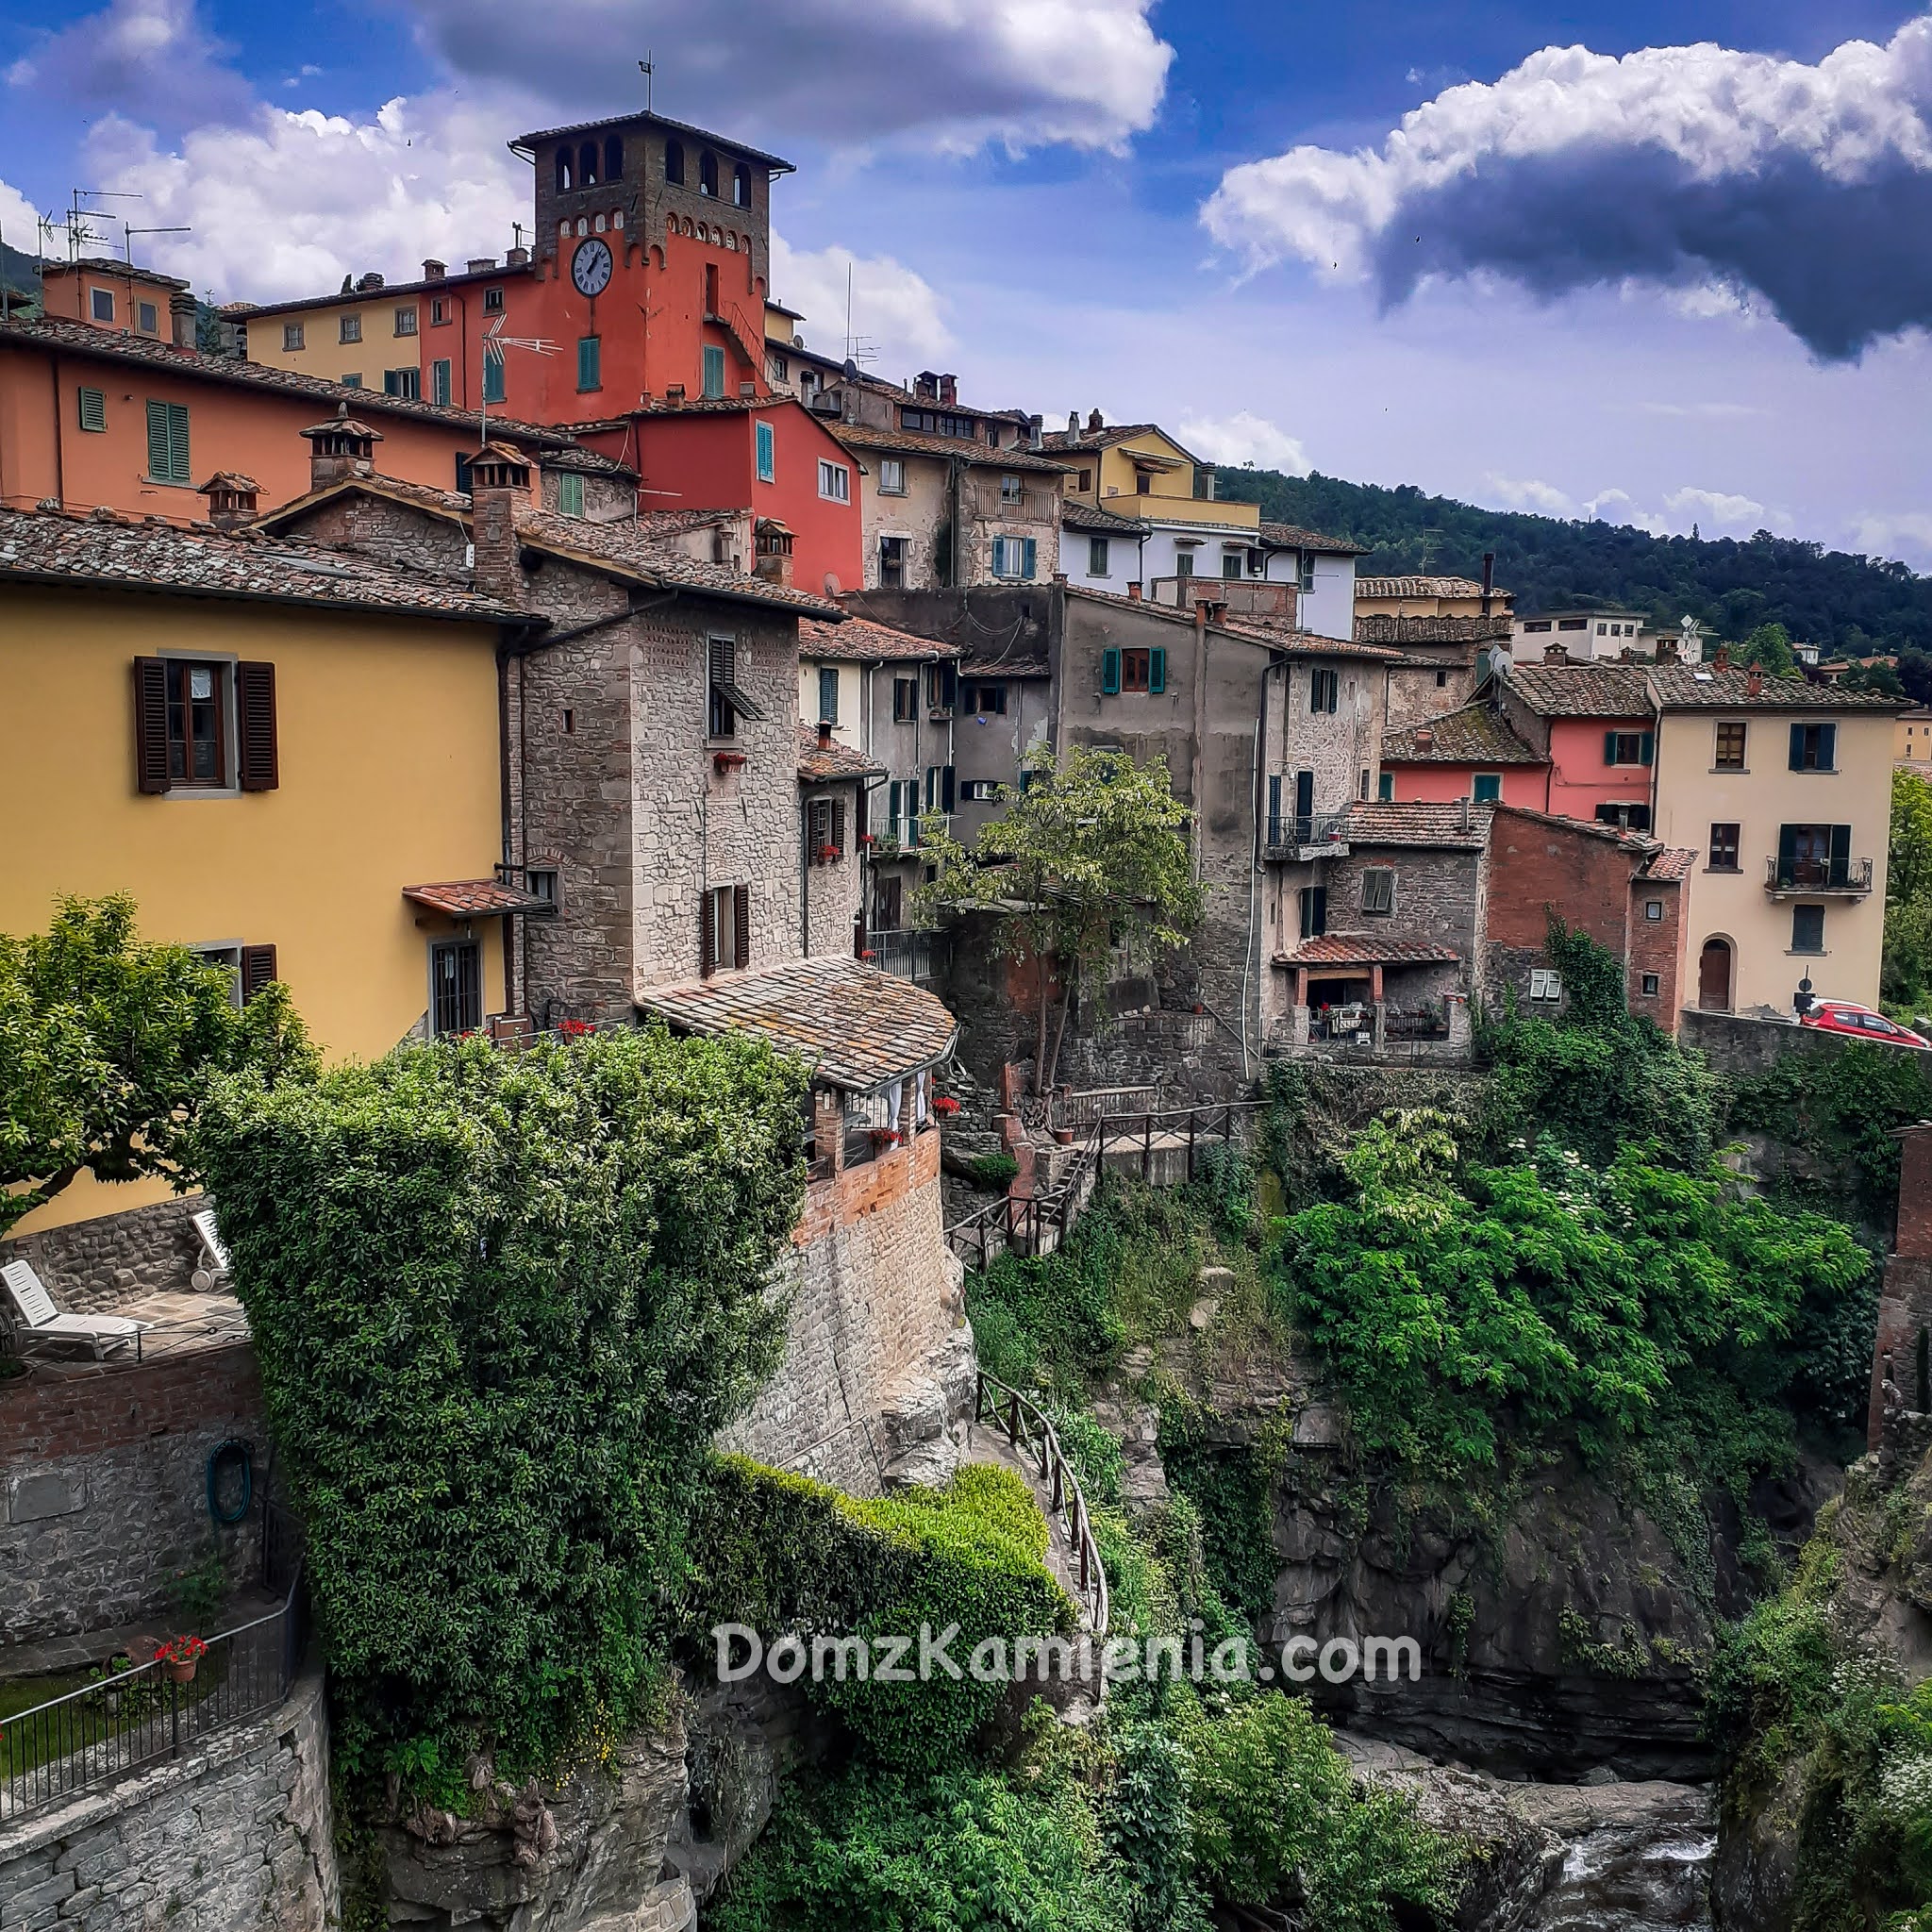 Loro Ciuffenna Dom z Kamienia, blog o życiu w Toskanii